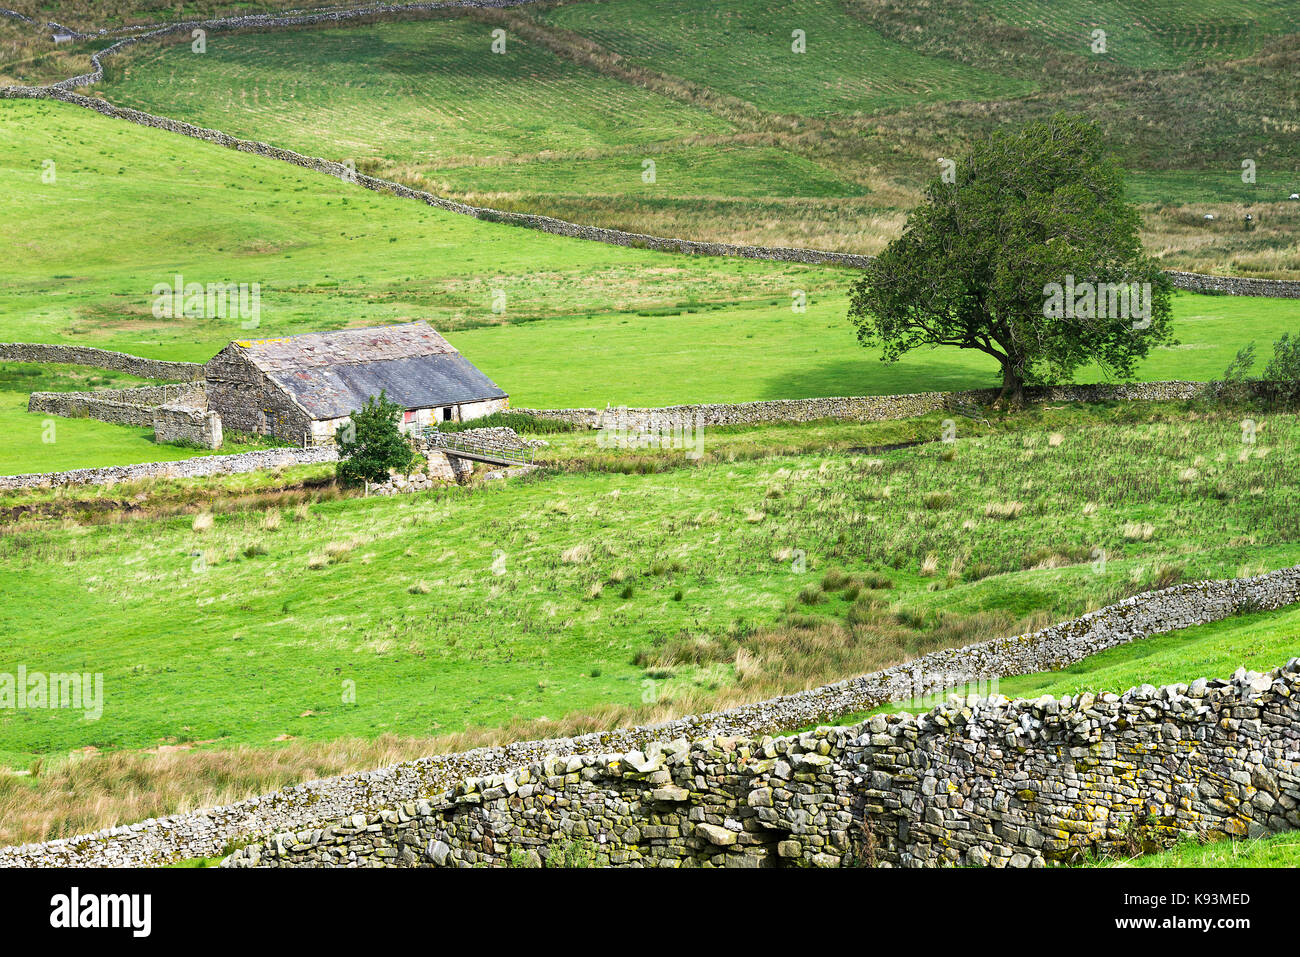 Yorkshire Dales typique des terres agricoles et grange en pierre calcaire avec des murs de pierres sèches au-dessus de champs de marquage Gayle près de Hawes Yorkshire Angleterre Royaume-Uni Banque D'Images